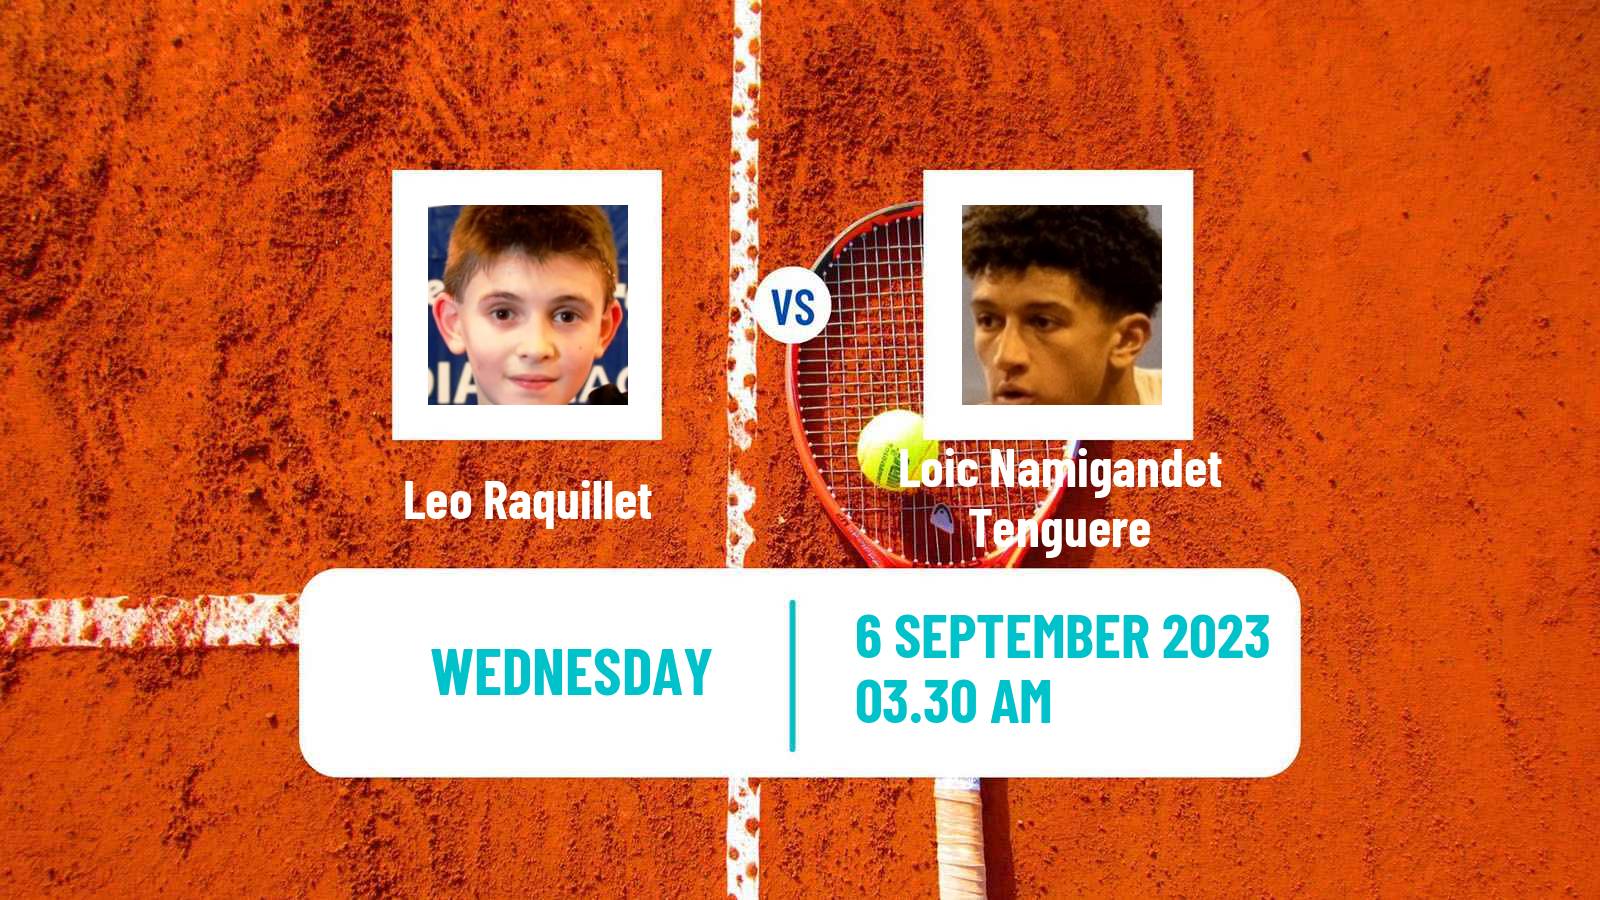 Tennis ITF M25 H Bagneres De Bigorre Men Leo Raquillet - Loic Namigandet Tenguere